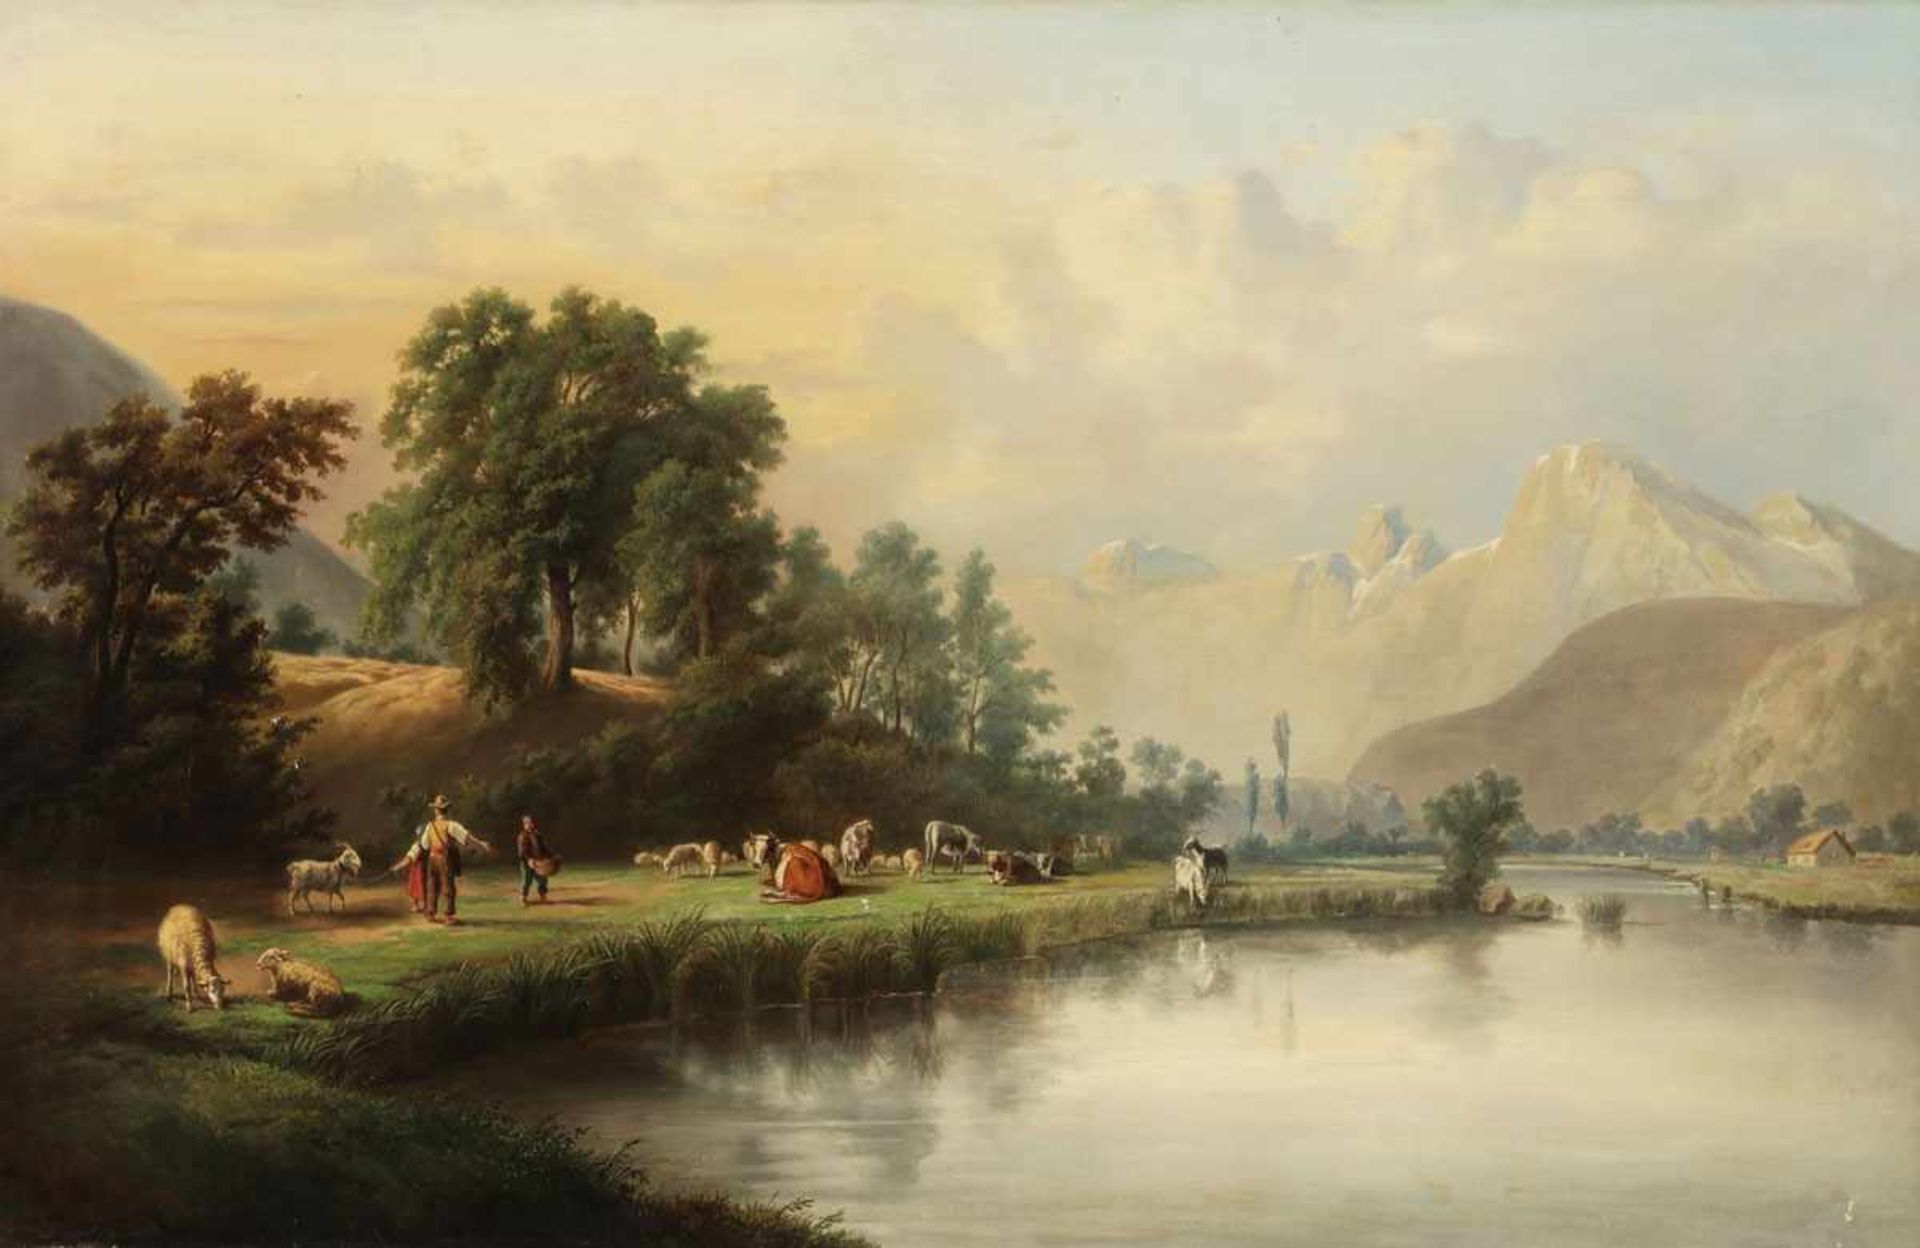 Künstler des 19. Jahrhunderts - Alpine Landschaft mit Bauern und Rindern - Öl/Lwd. 65 x 100 cm. R.